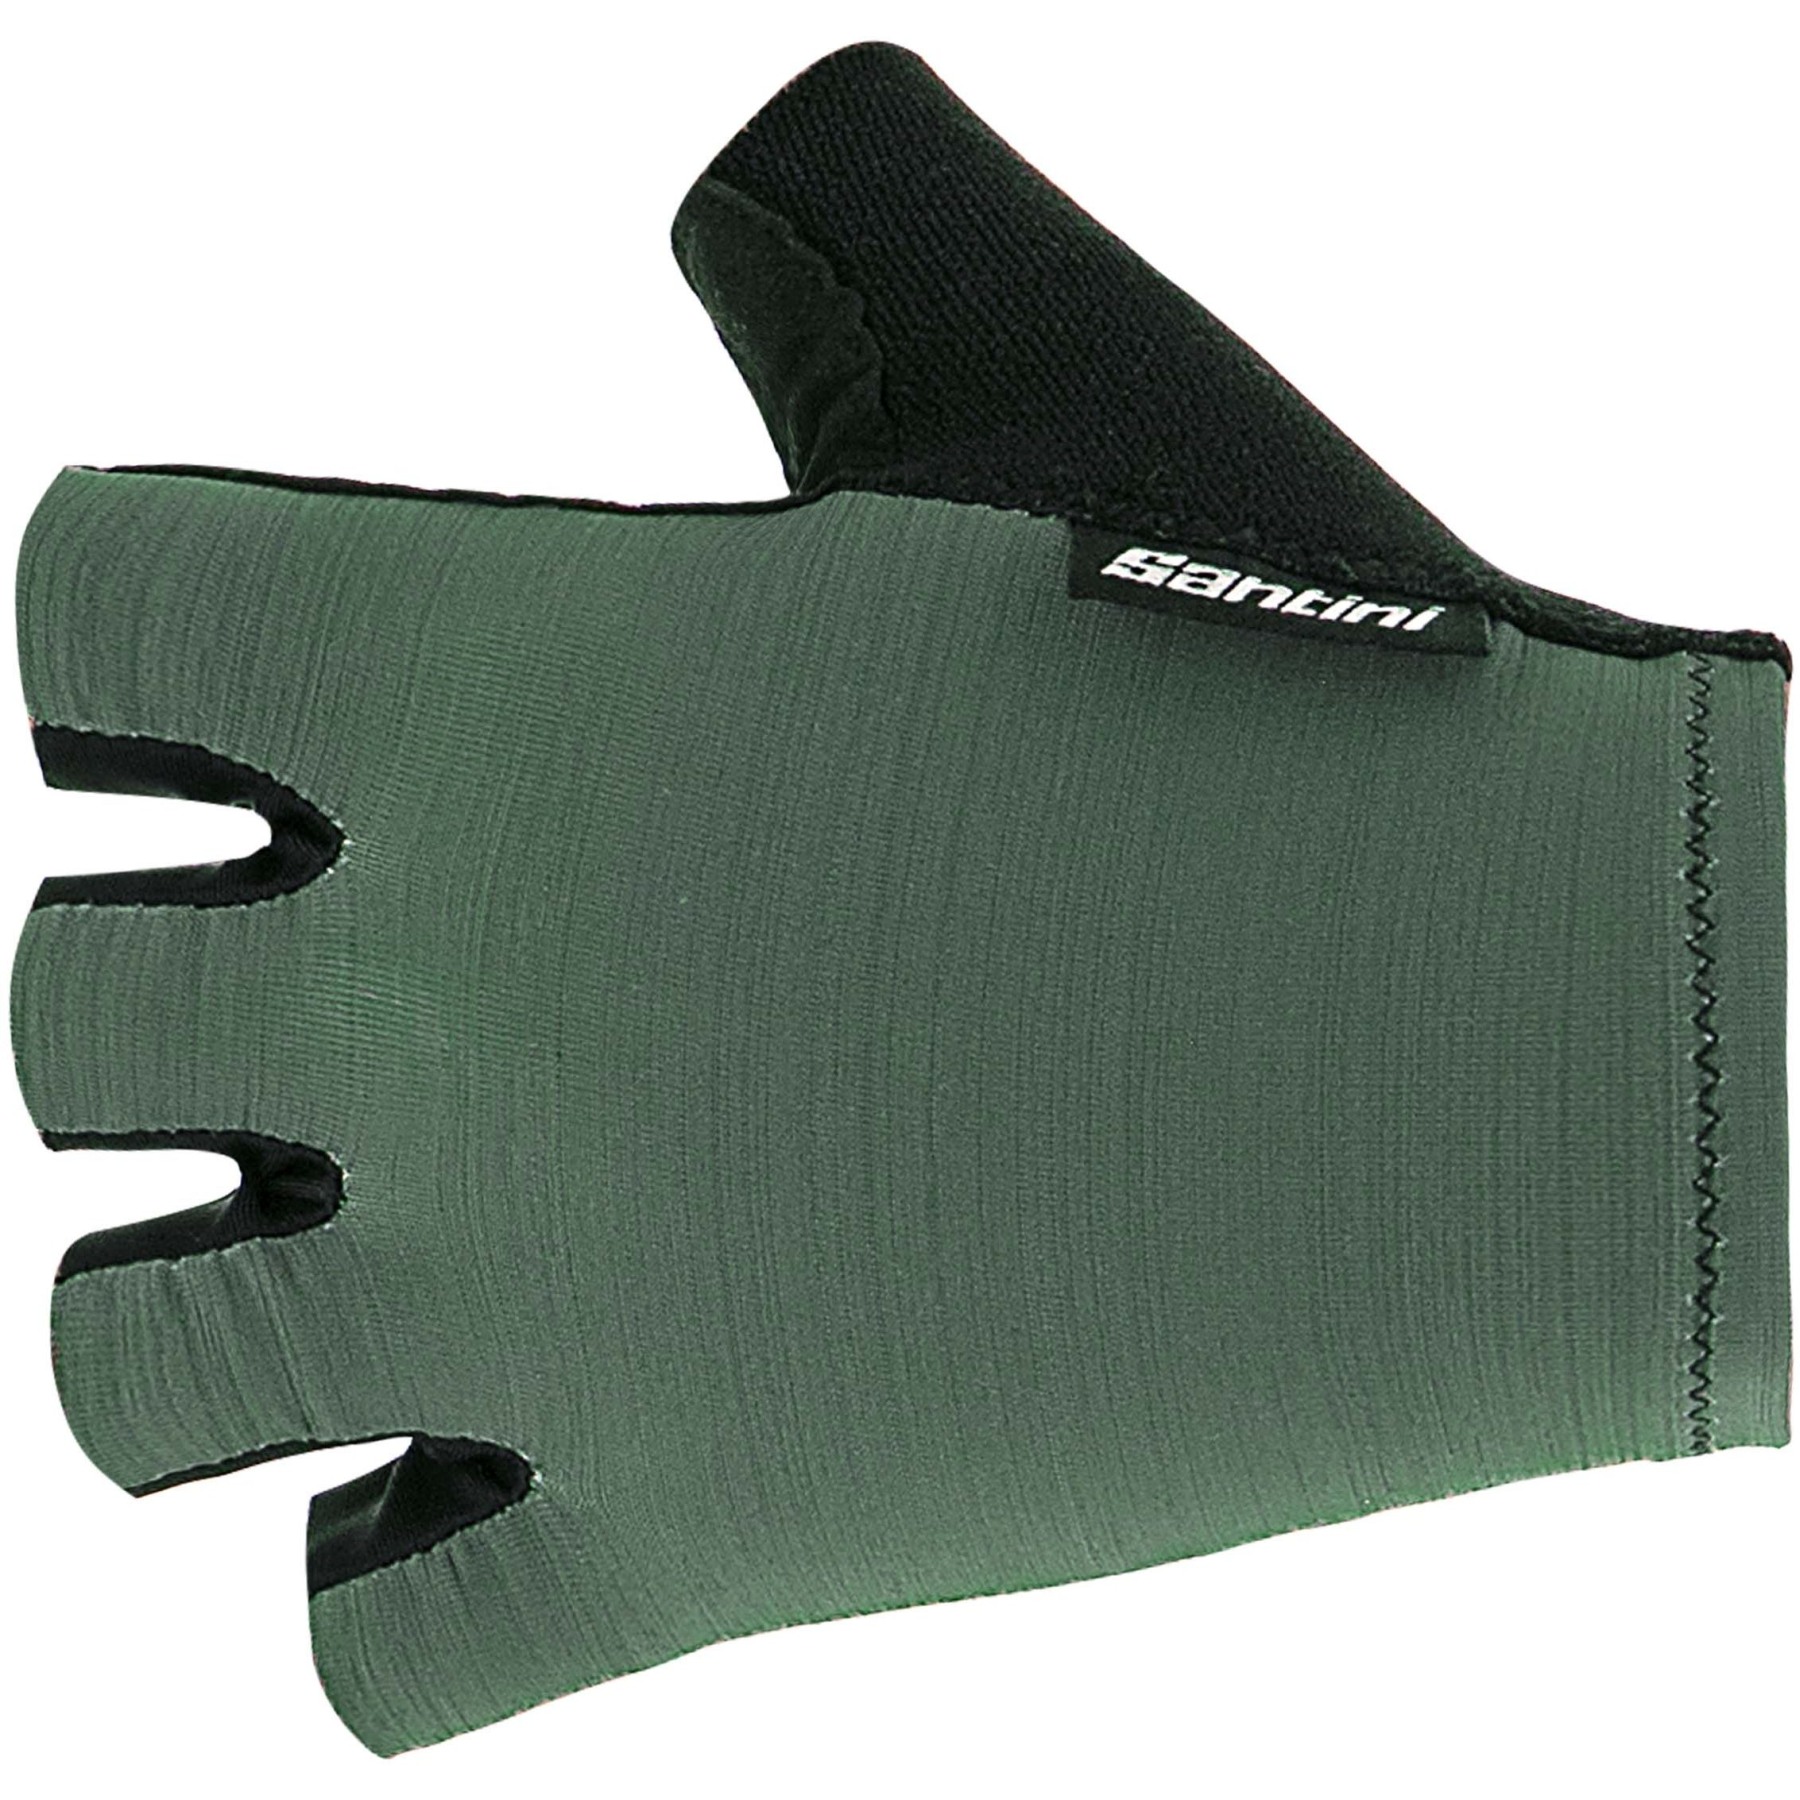 Productfoto van Santini Cubo Handschoenen met Korte Vingers 1S367CLCUBO - military green VM